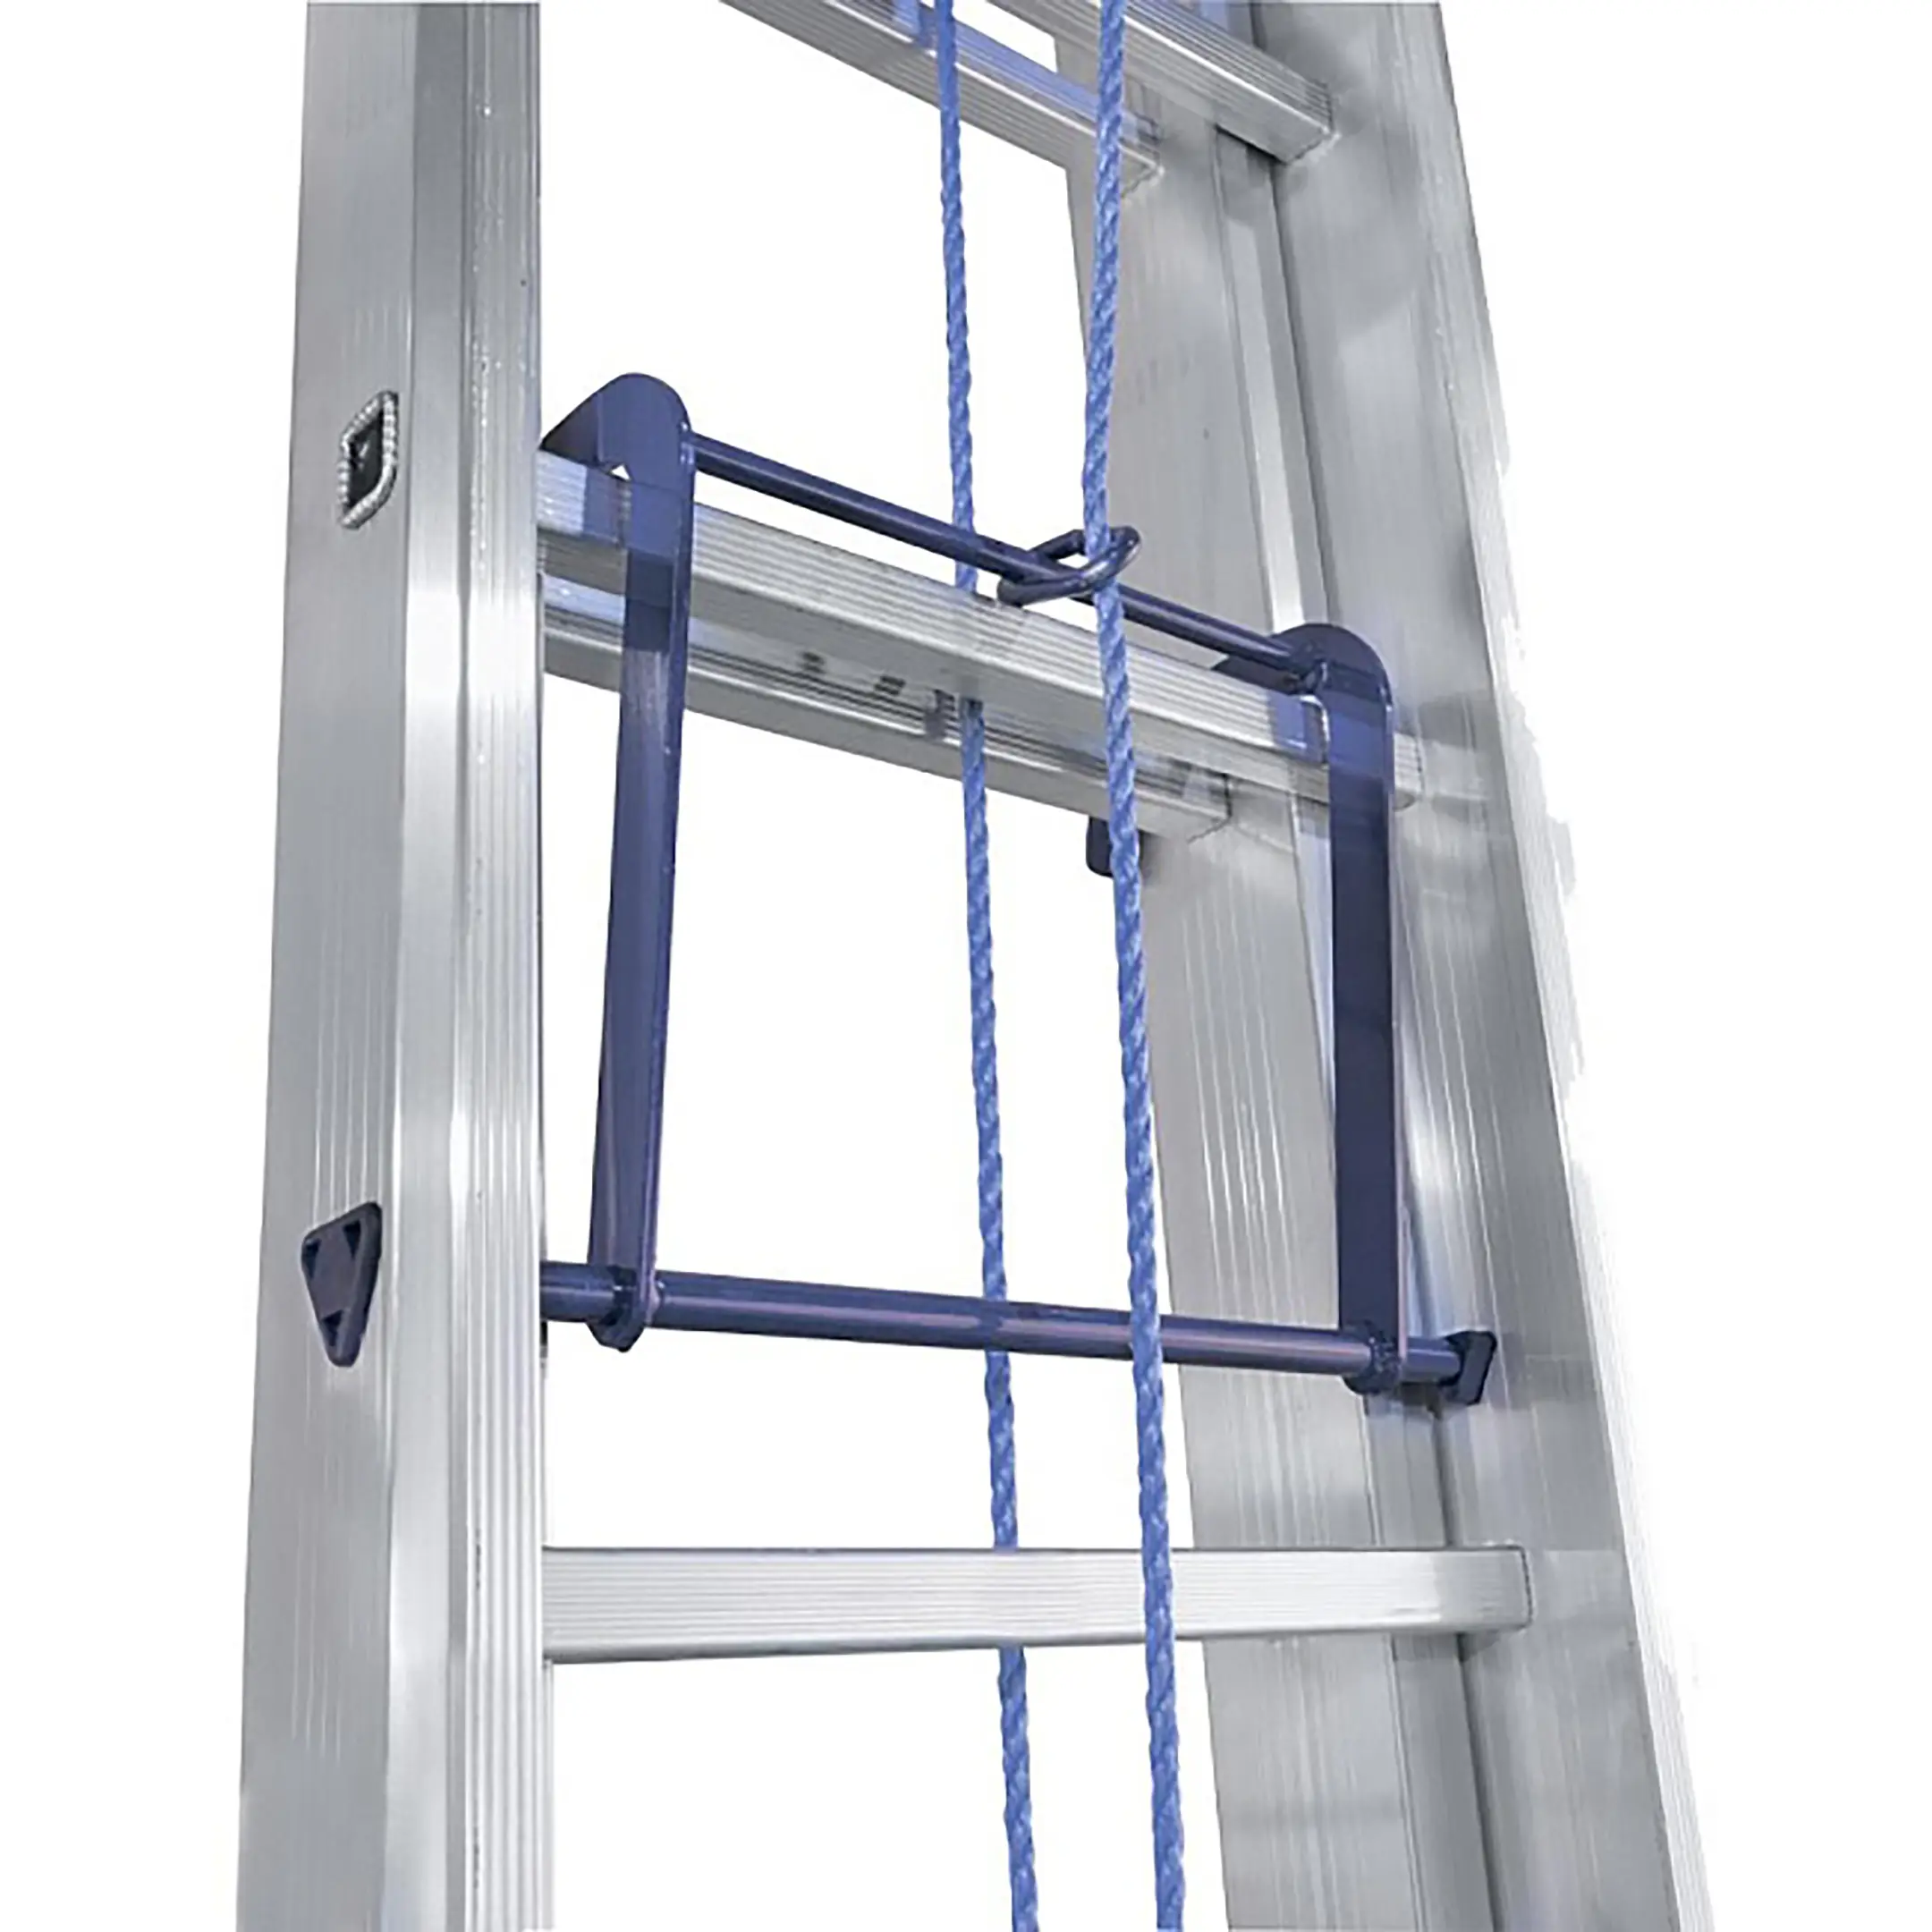 Лестница трехсекционная алюминиевая выдвижная с тросом Alumet 3х15 арт. 3315